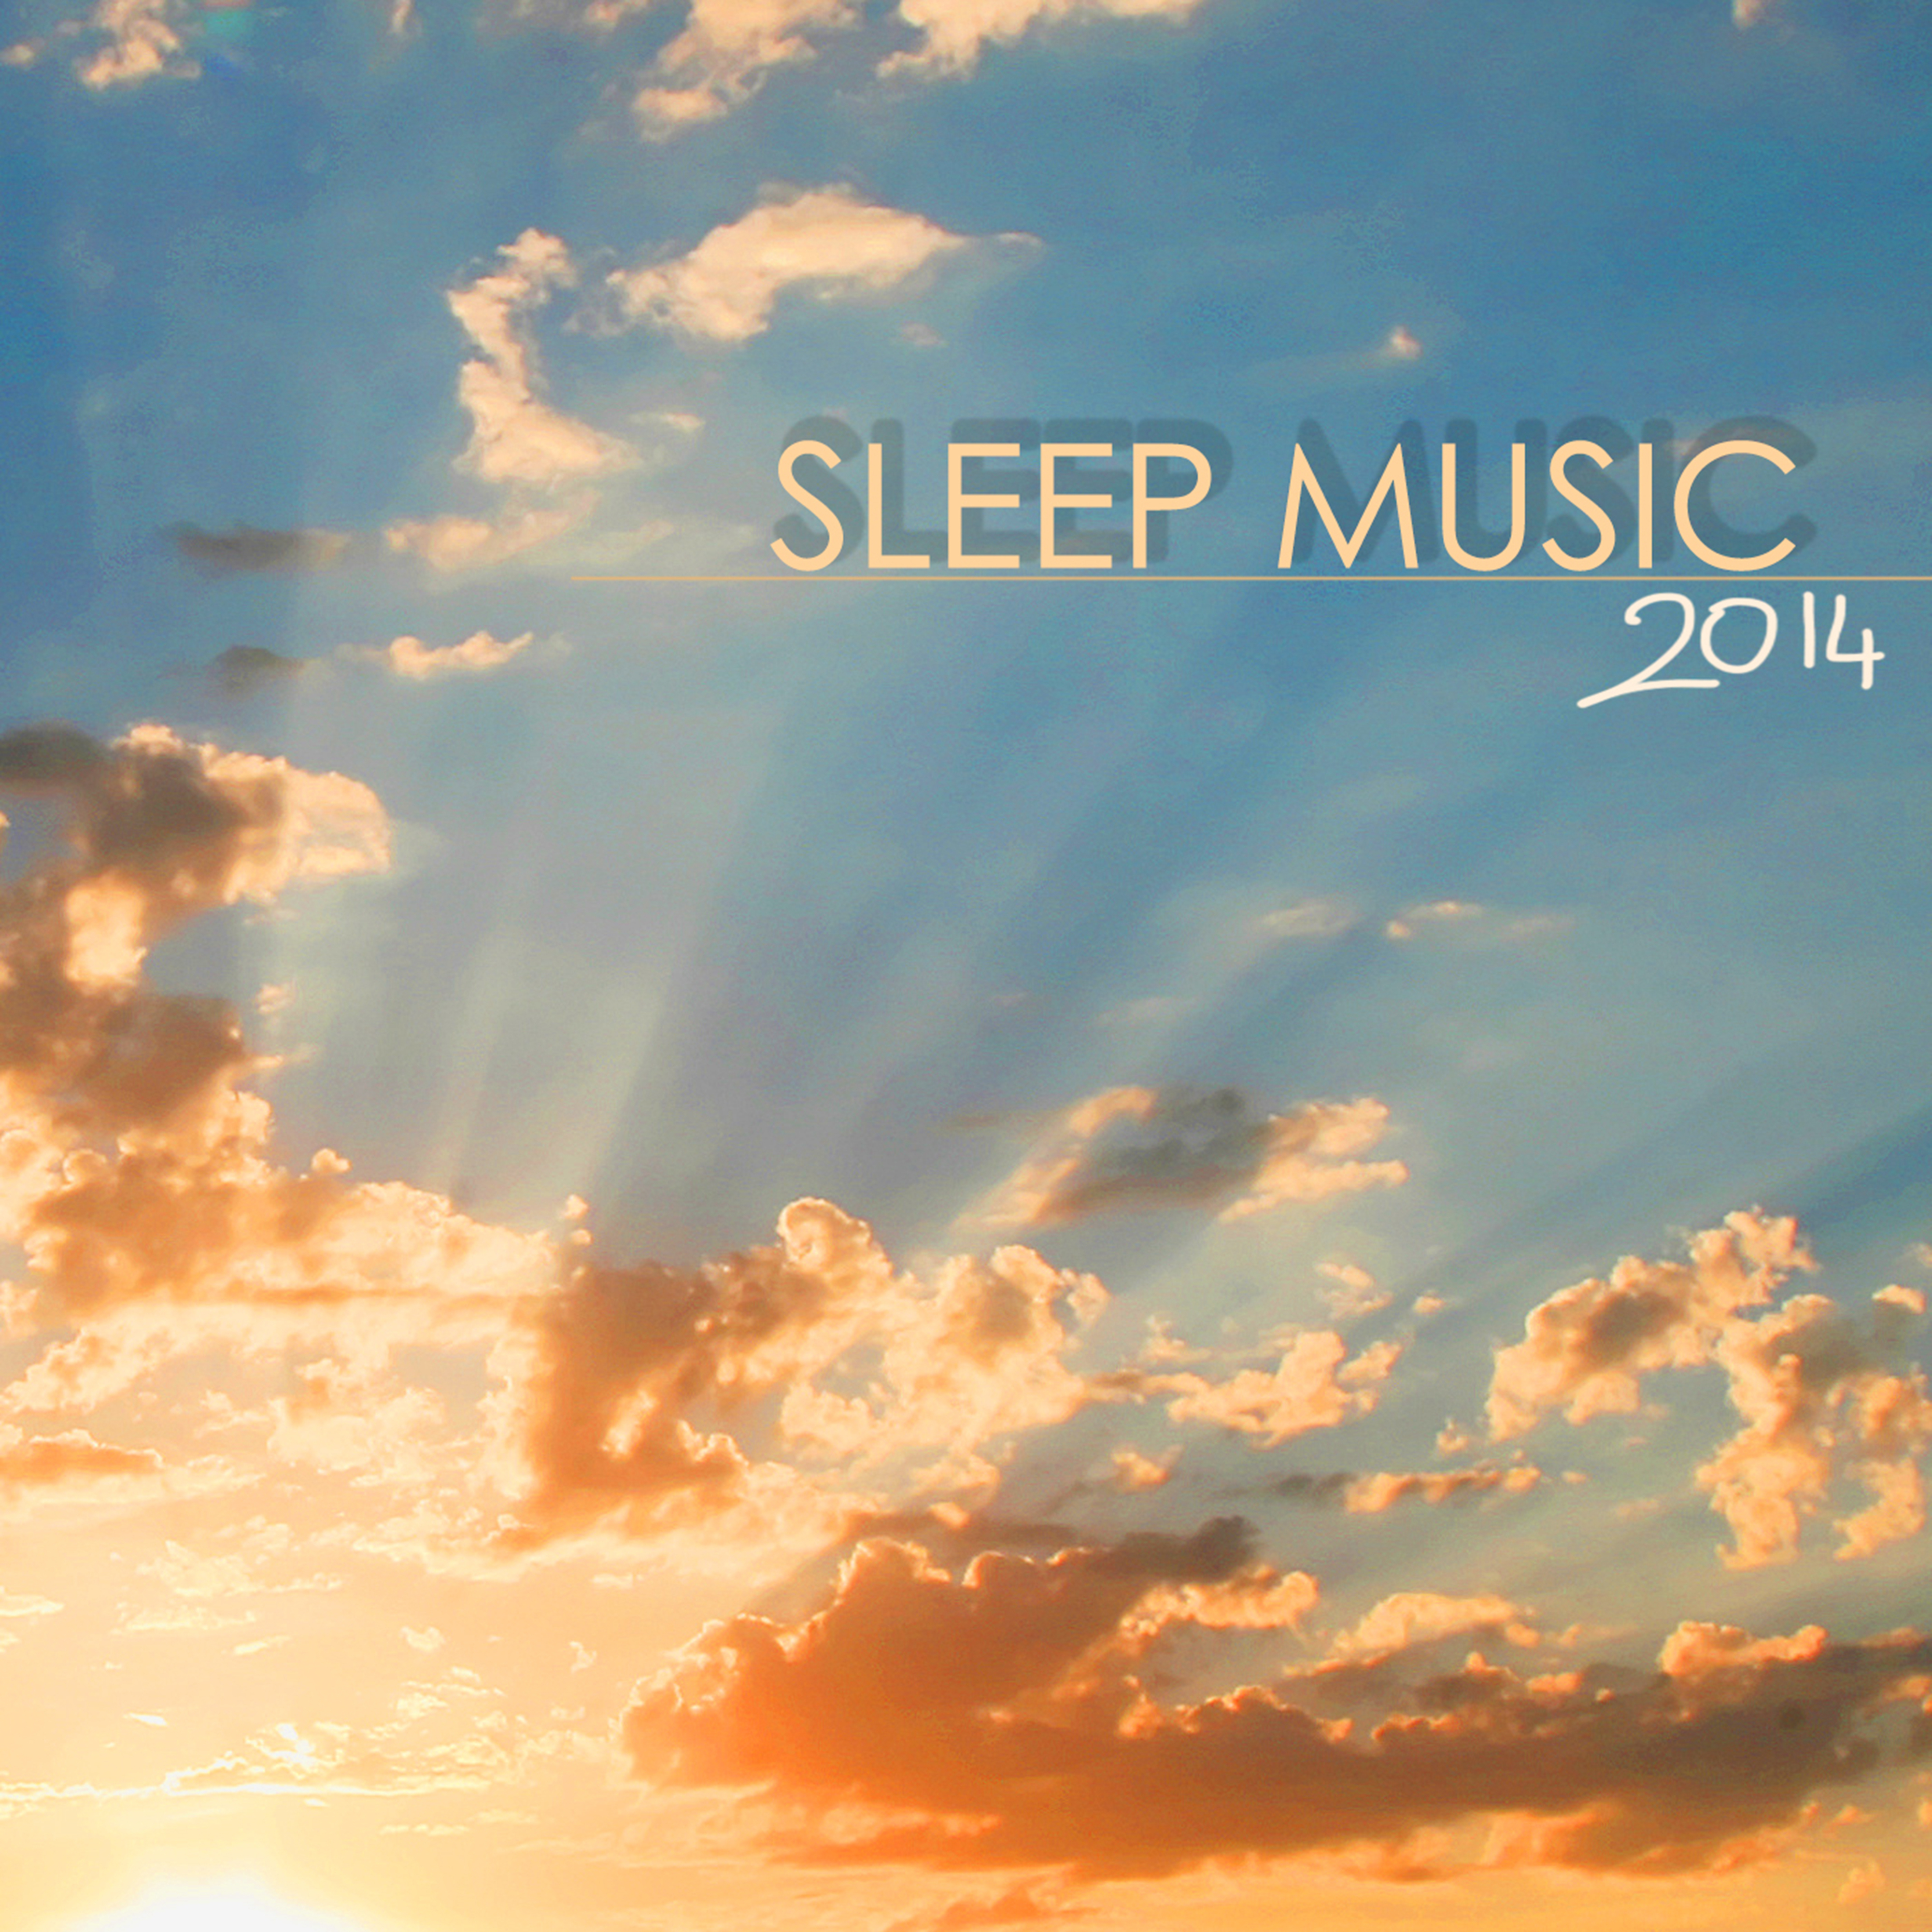 Baby Sleep - Gentle Music for Sleeping